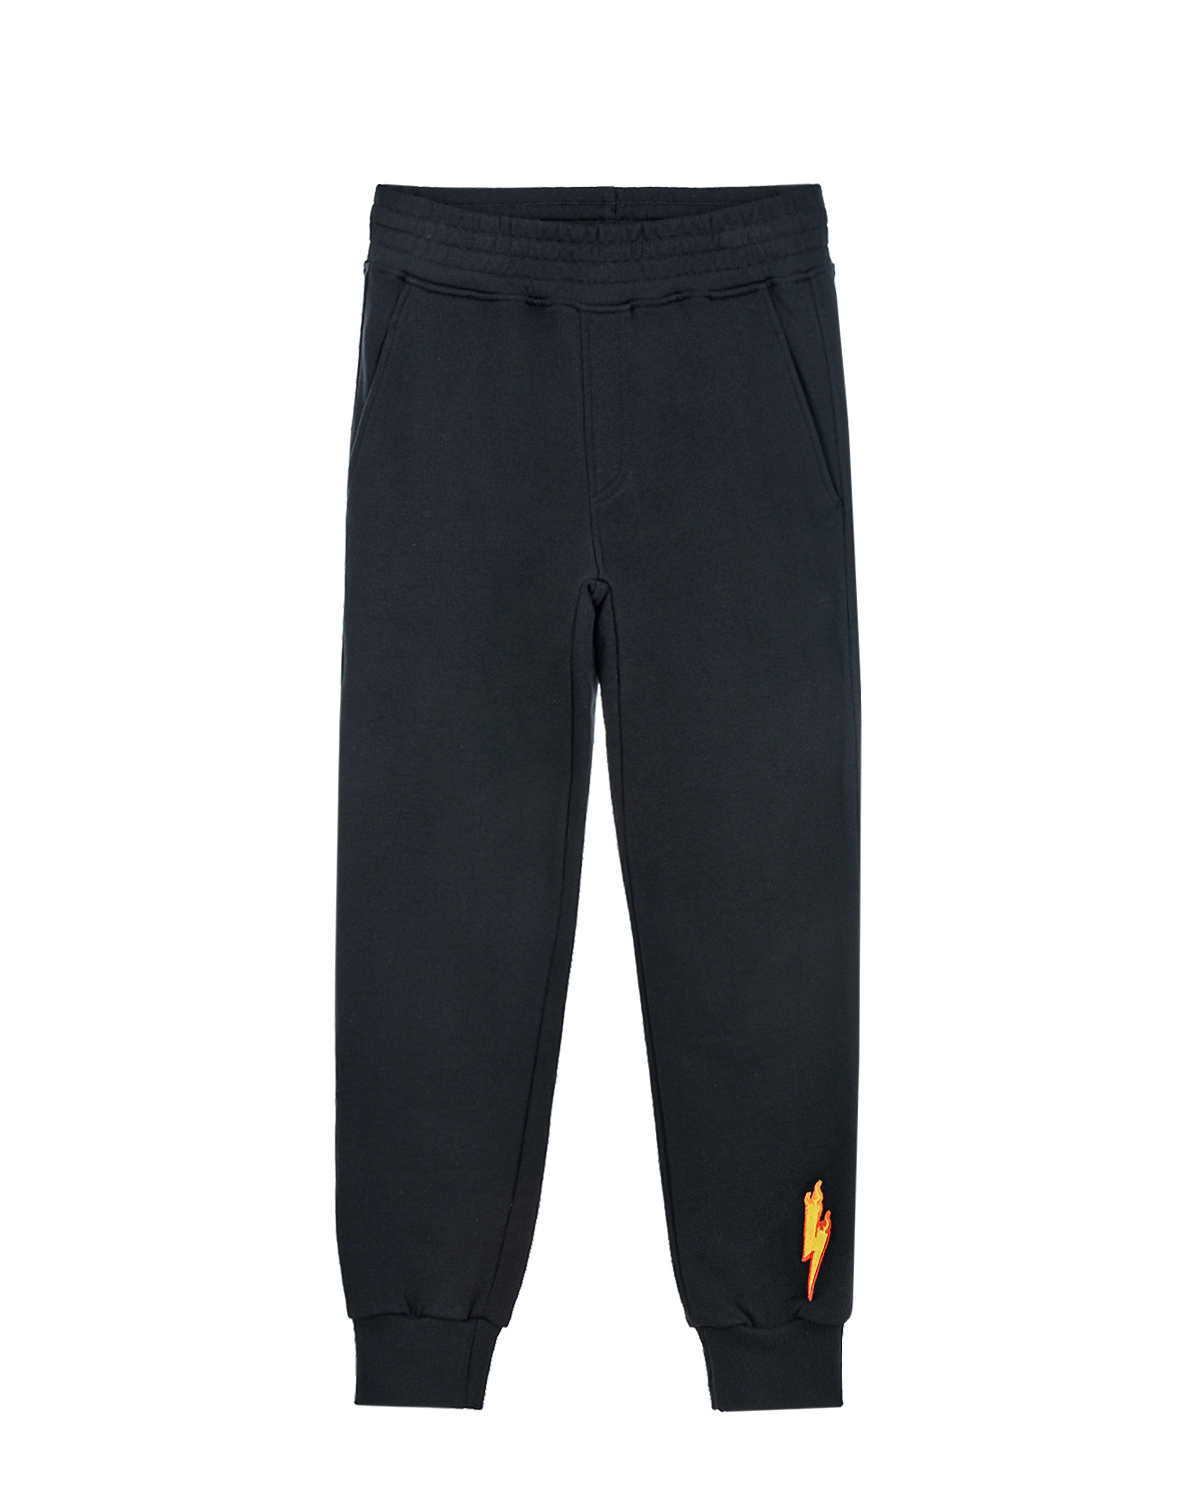 Спортивные брюки с принтом "Молнии" Neil Barrett детские, размер 140, цвет черный - фото 1